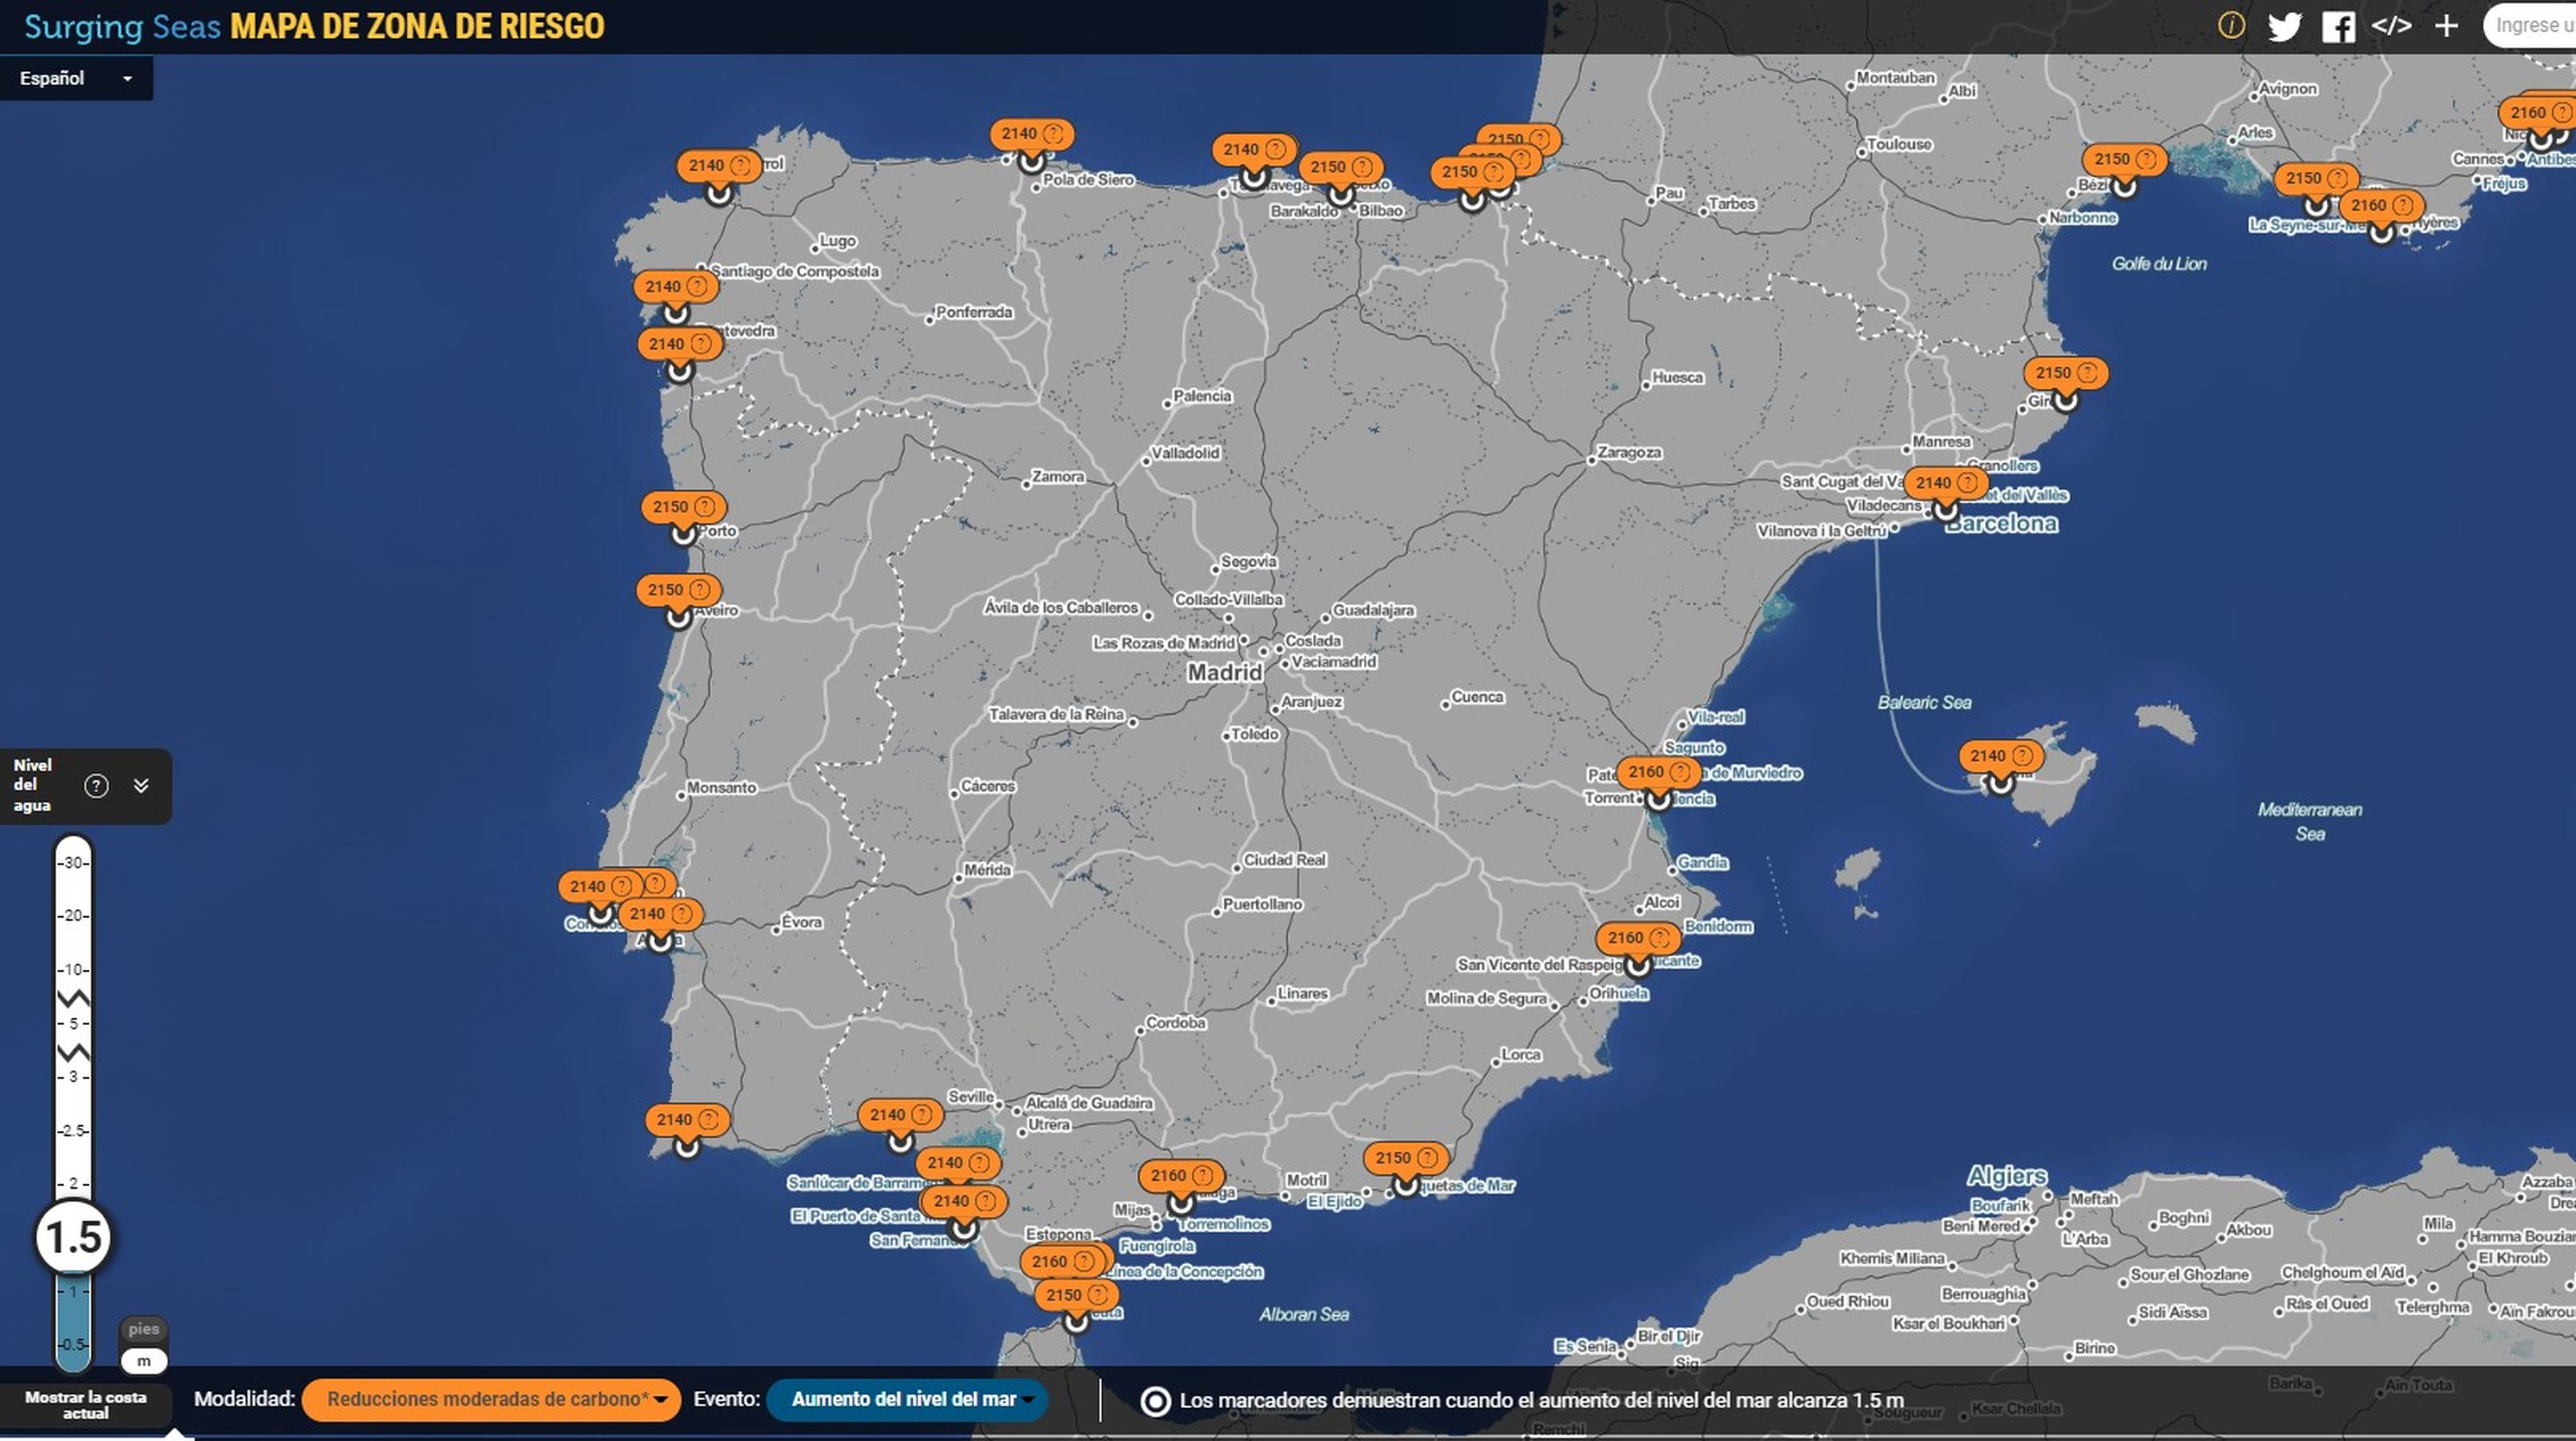 Este mapa deja claro qué ciudades españolas serán las primeras en desaparecer bajo el agua si sigue subiendo el nivel del mar